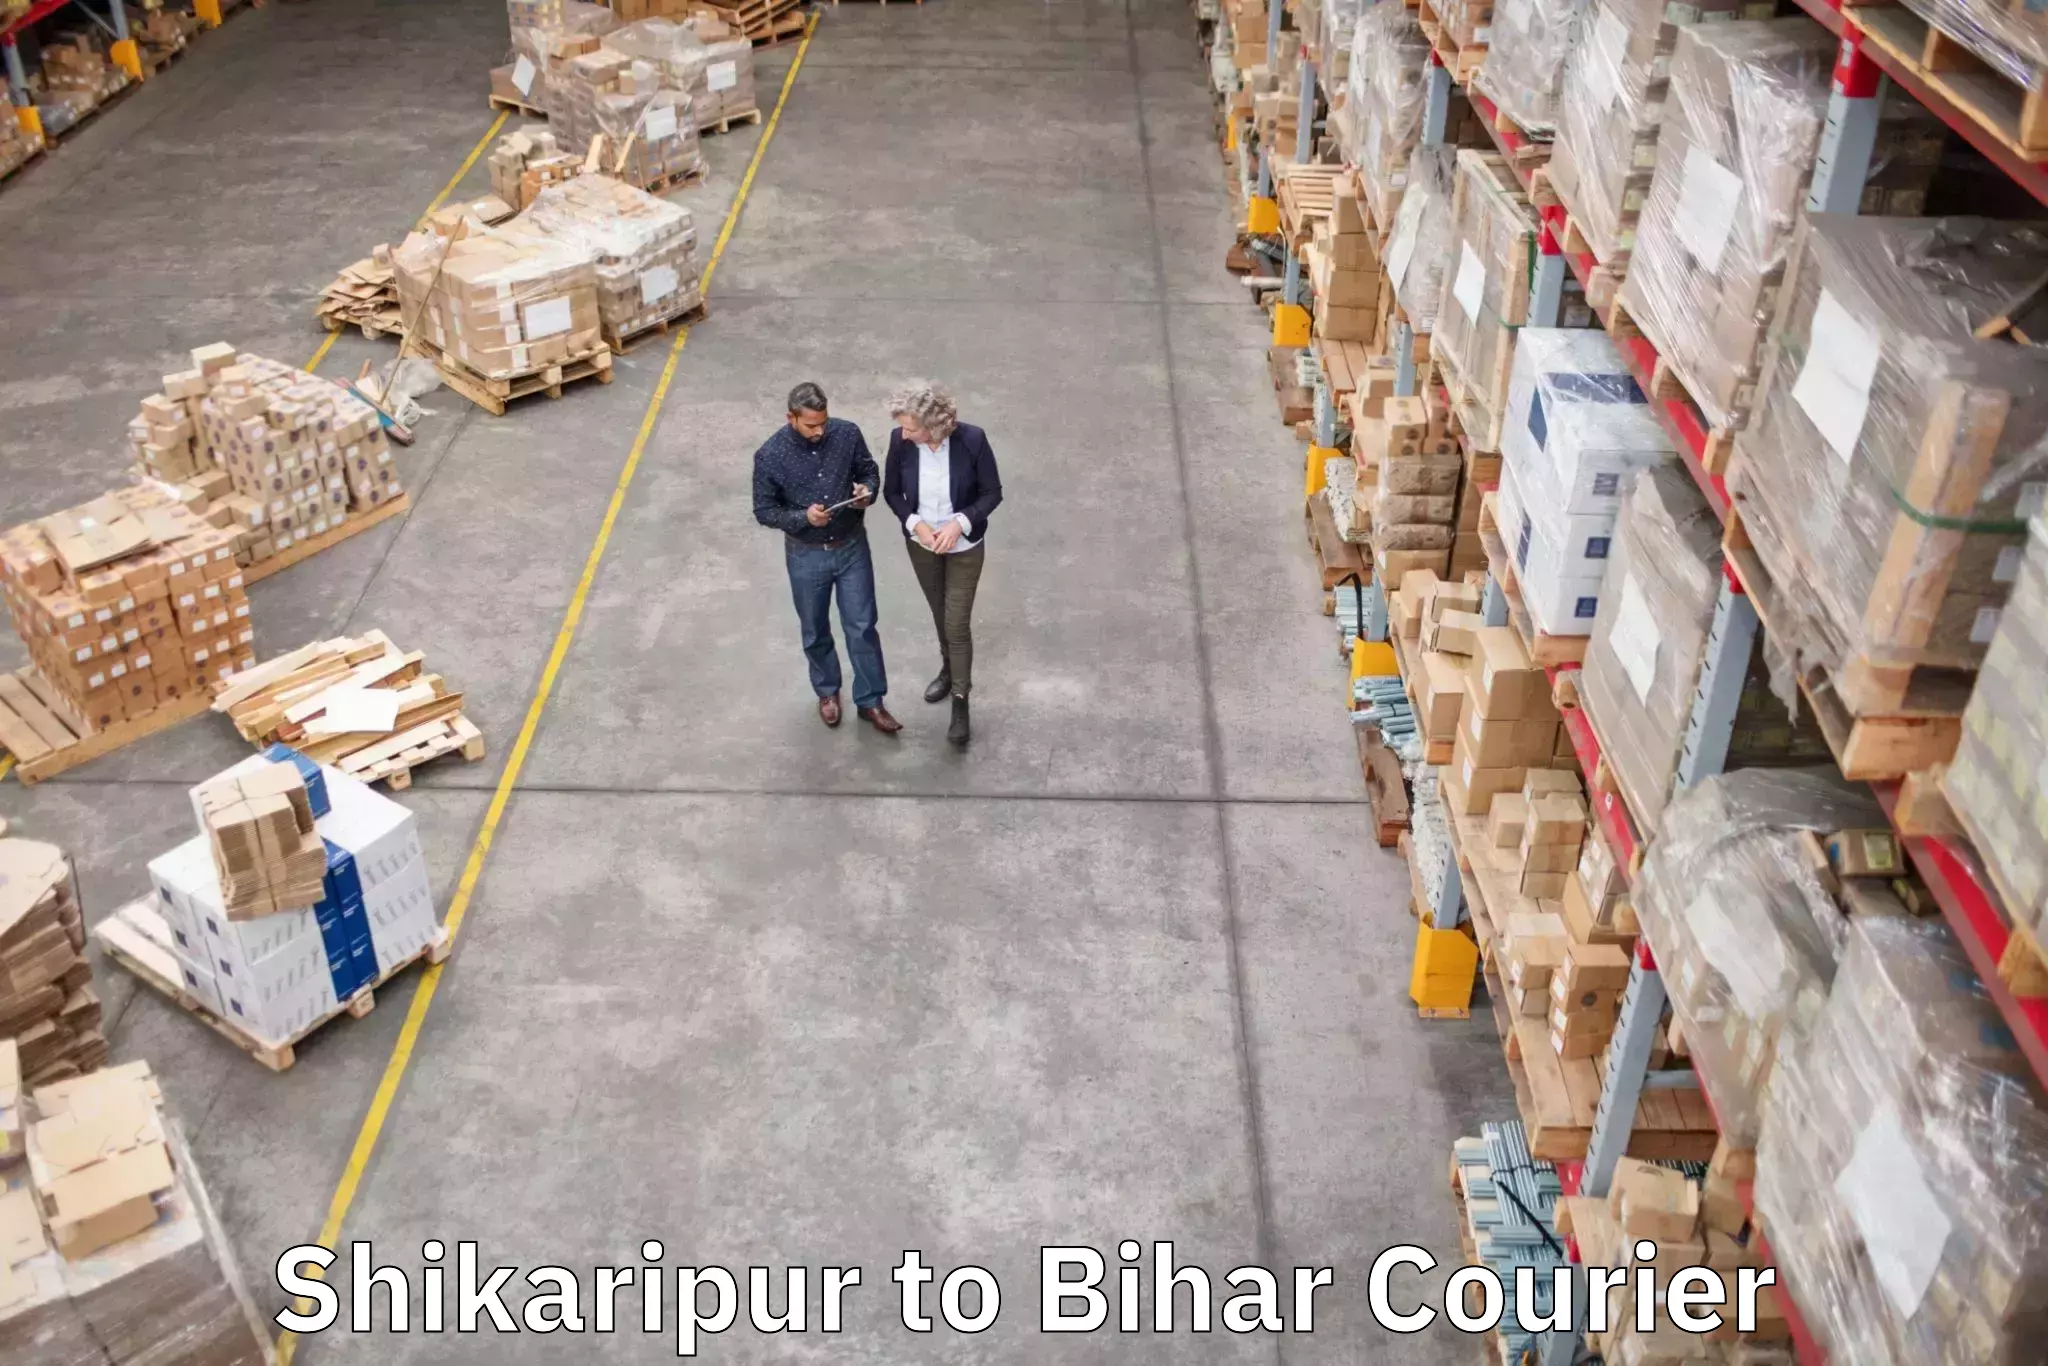 Baggage delivery solutions Shikaripur to Muzaffarpur